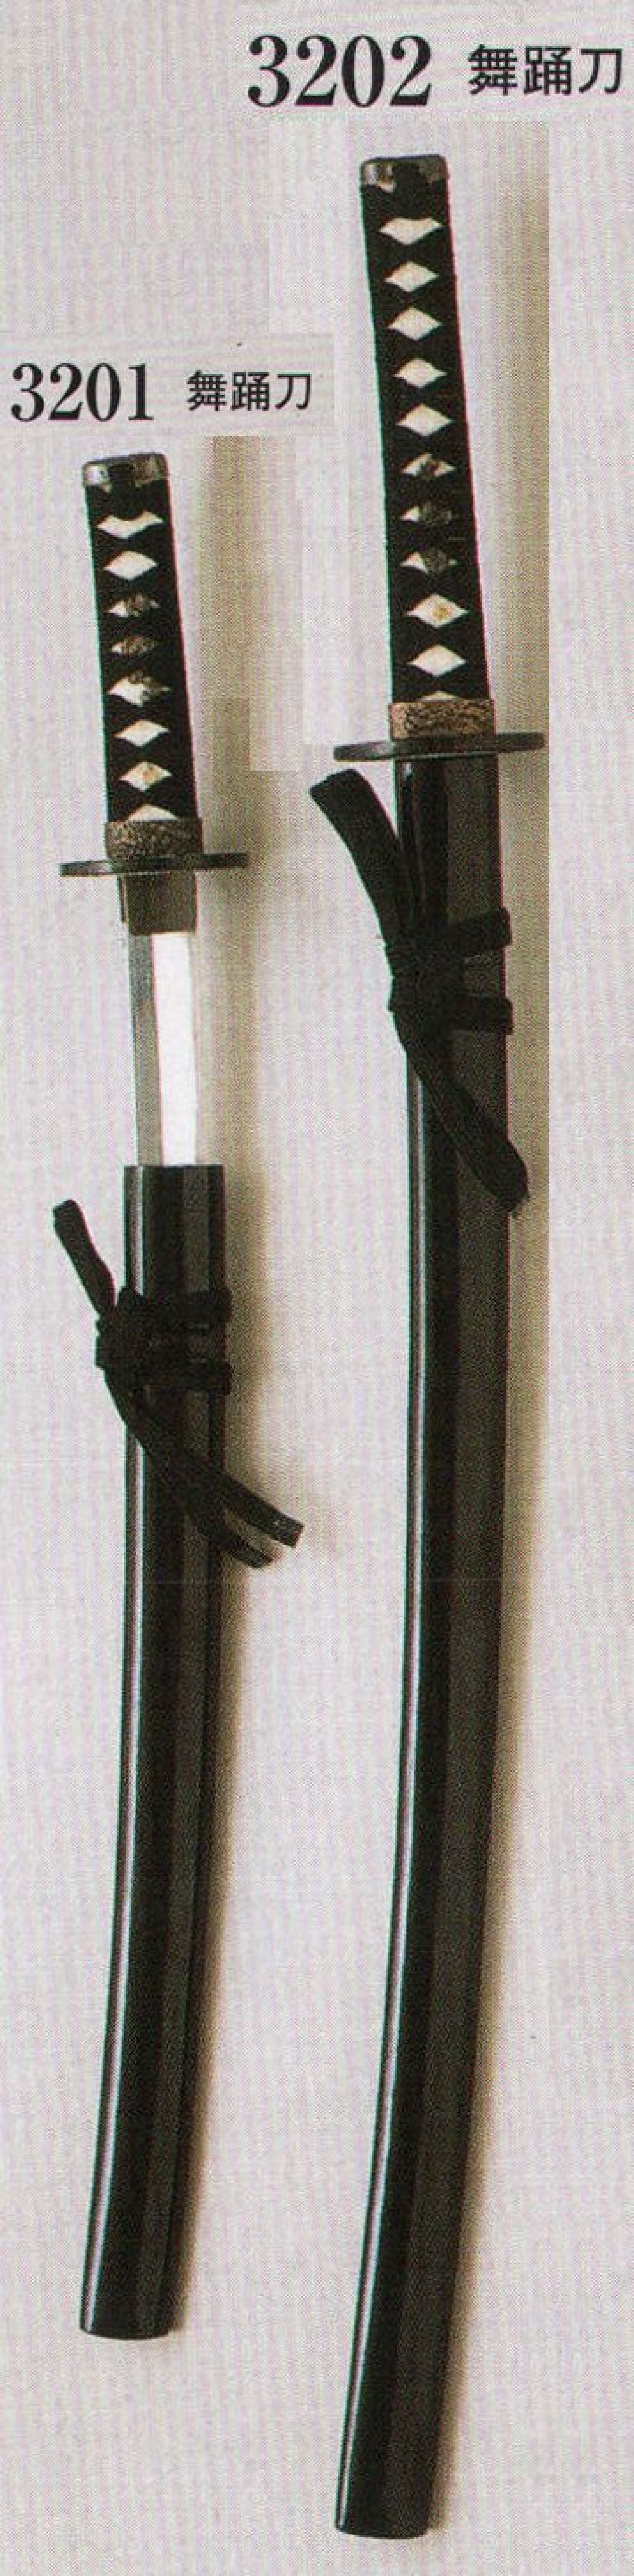 祭り用品jp 舞踏刀 (模造刀) 日本の歳時記 3201 祭り用品の専門店